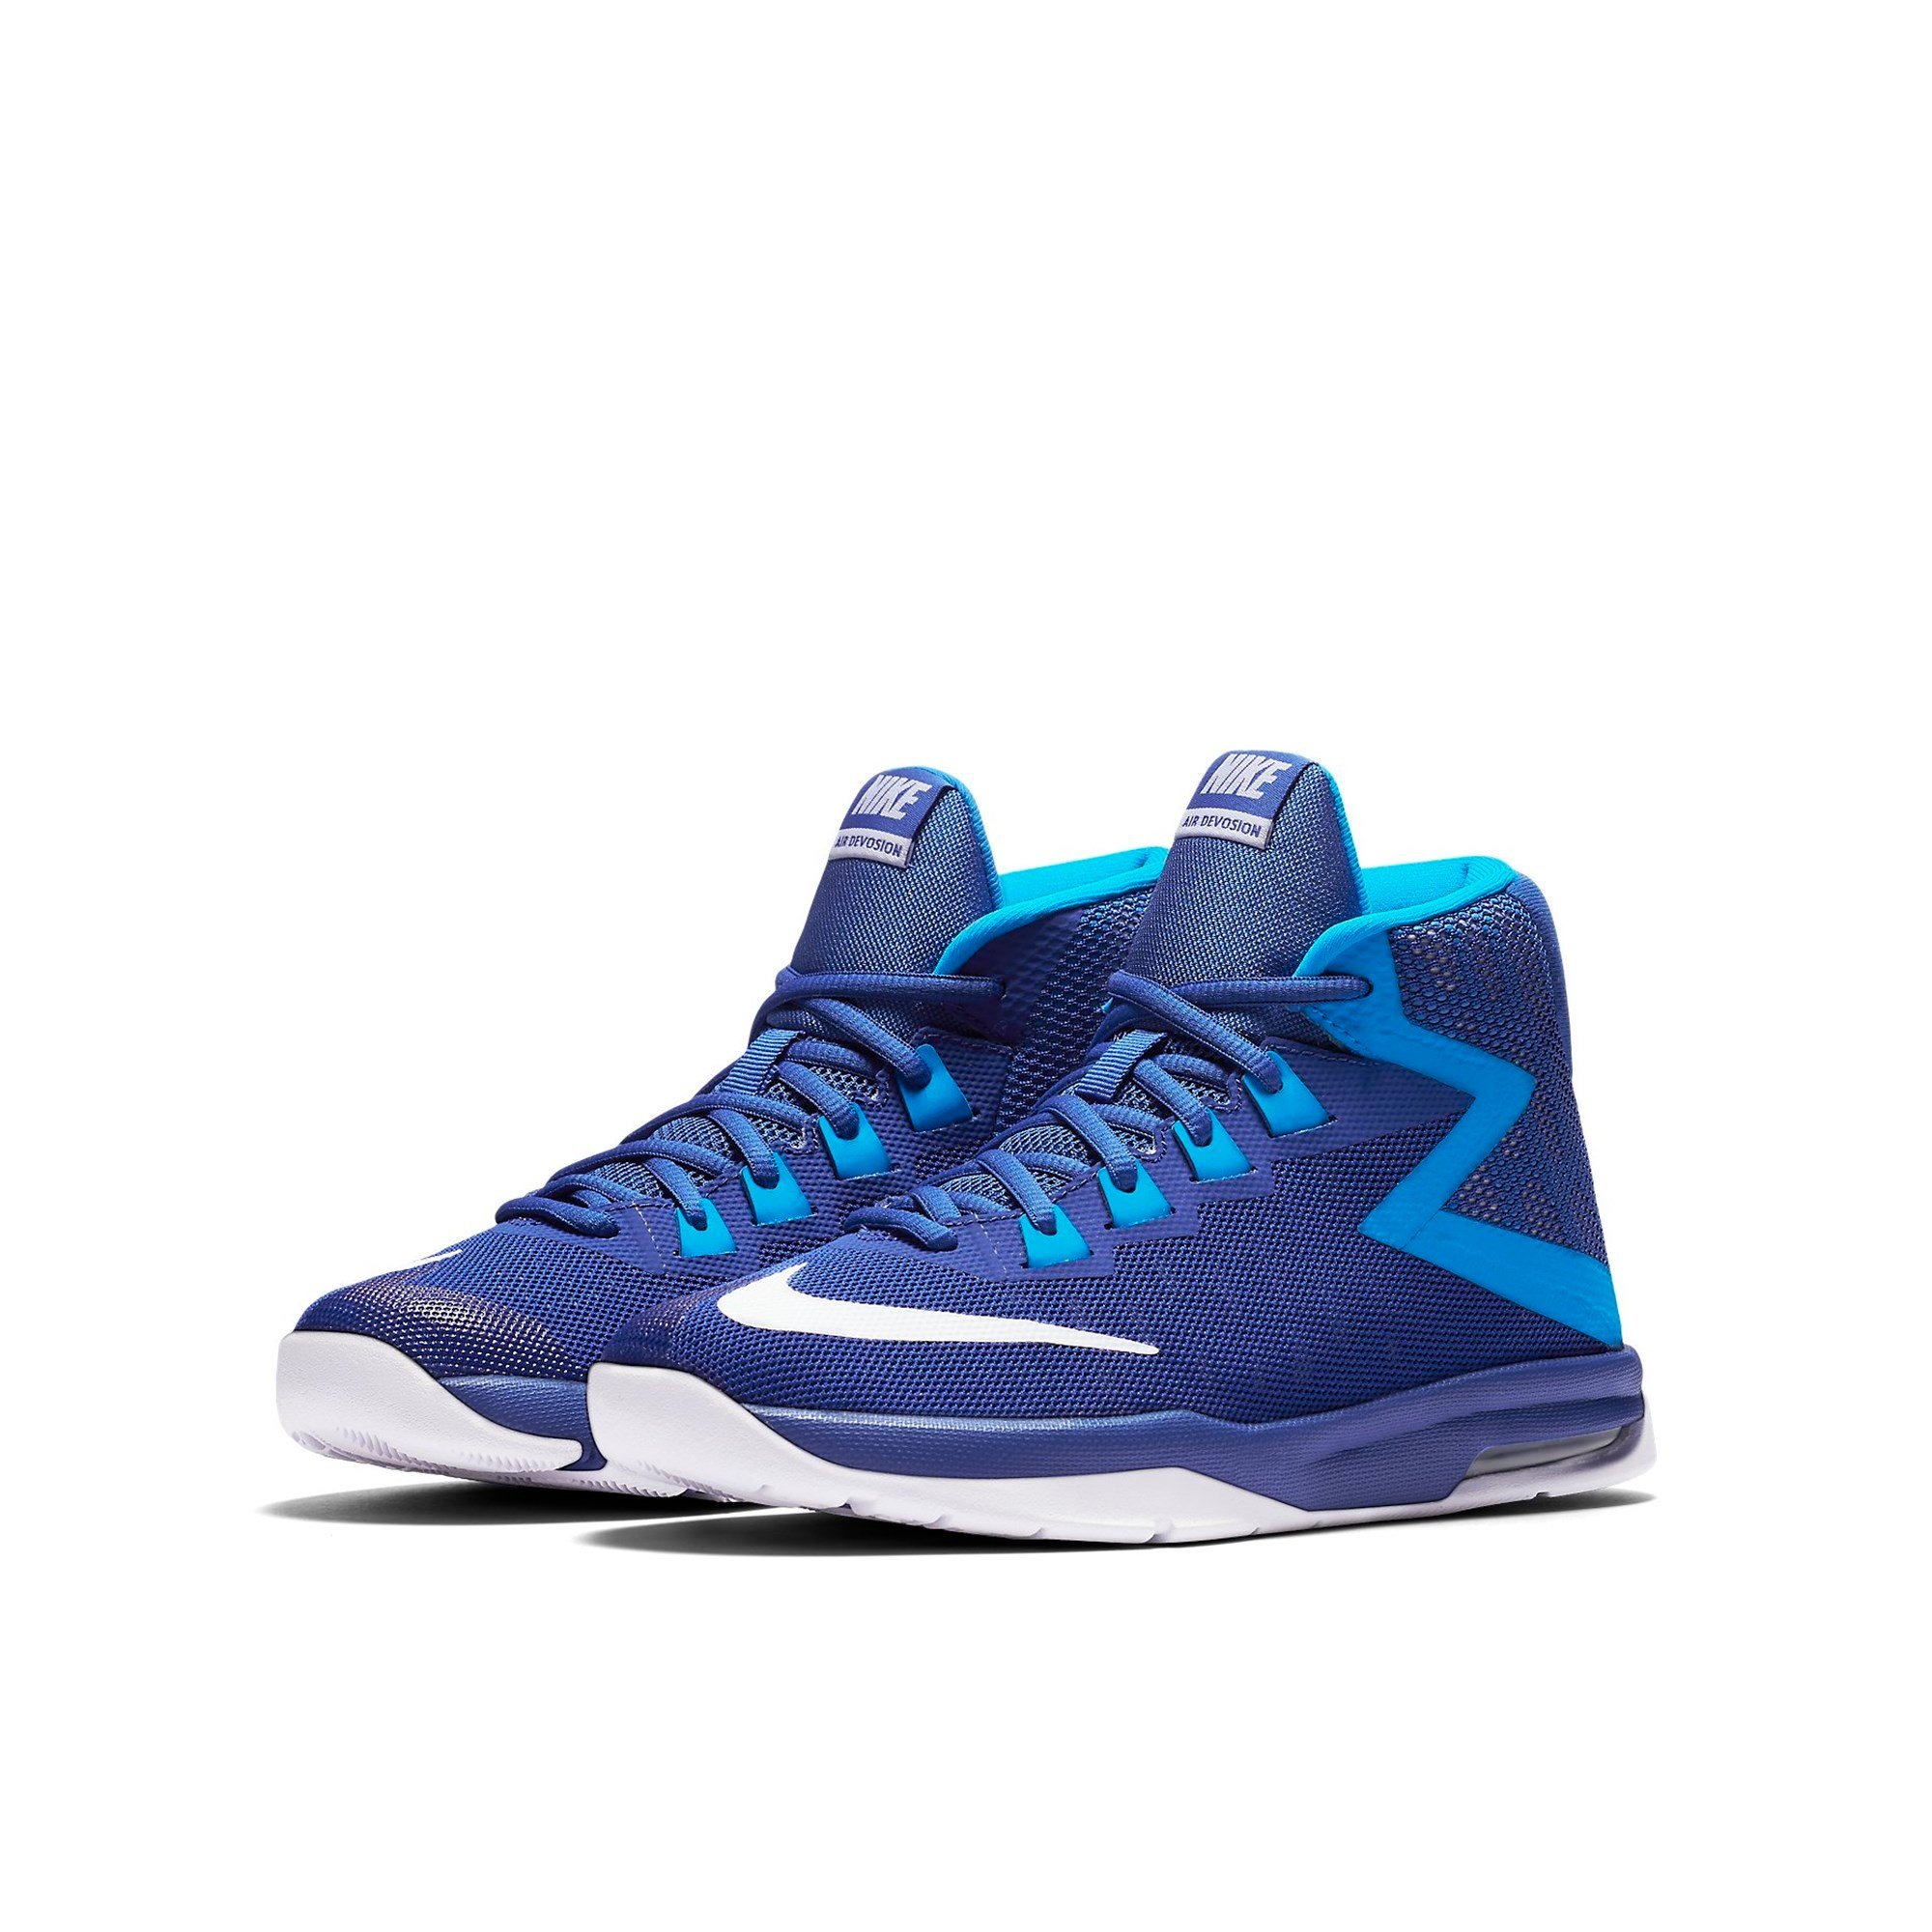 Nike Air Devosion Junior Basketbol Ayakkabısı Ürün kodu :845081-400 |  Etichet Sport